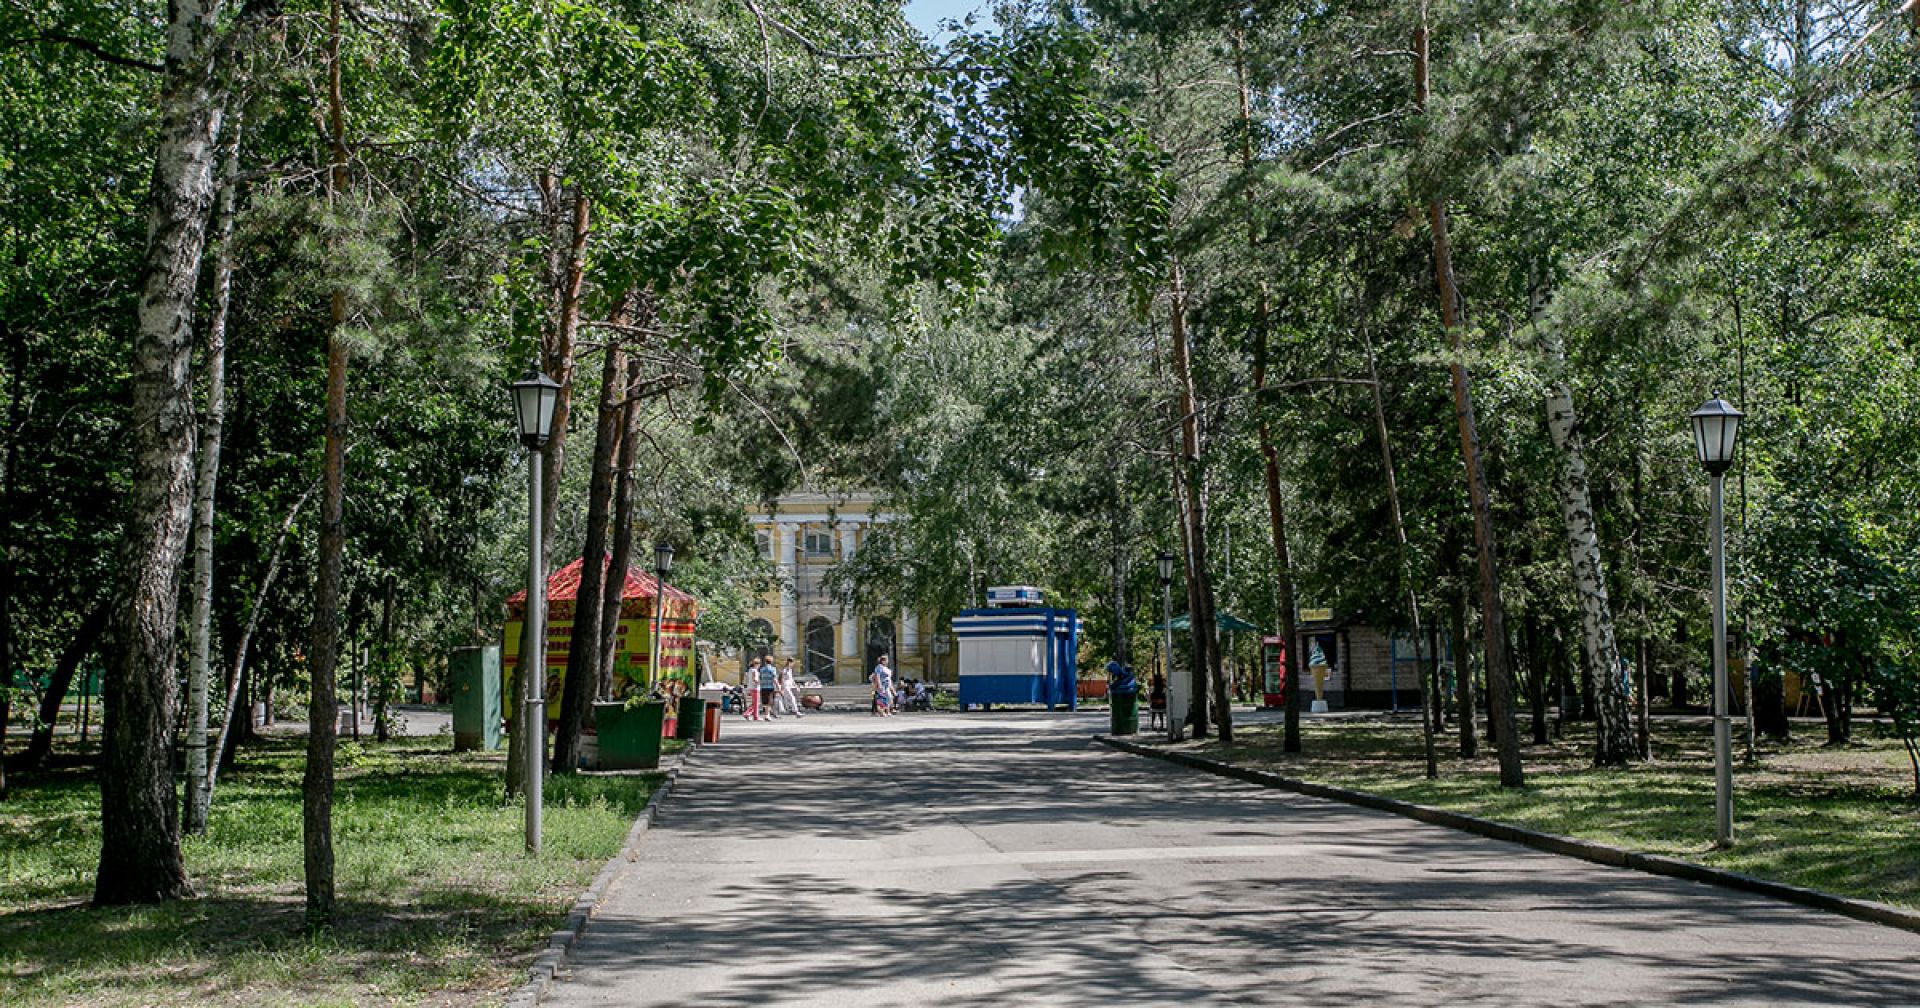 новосибирск центральный парк сцена